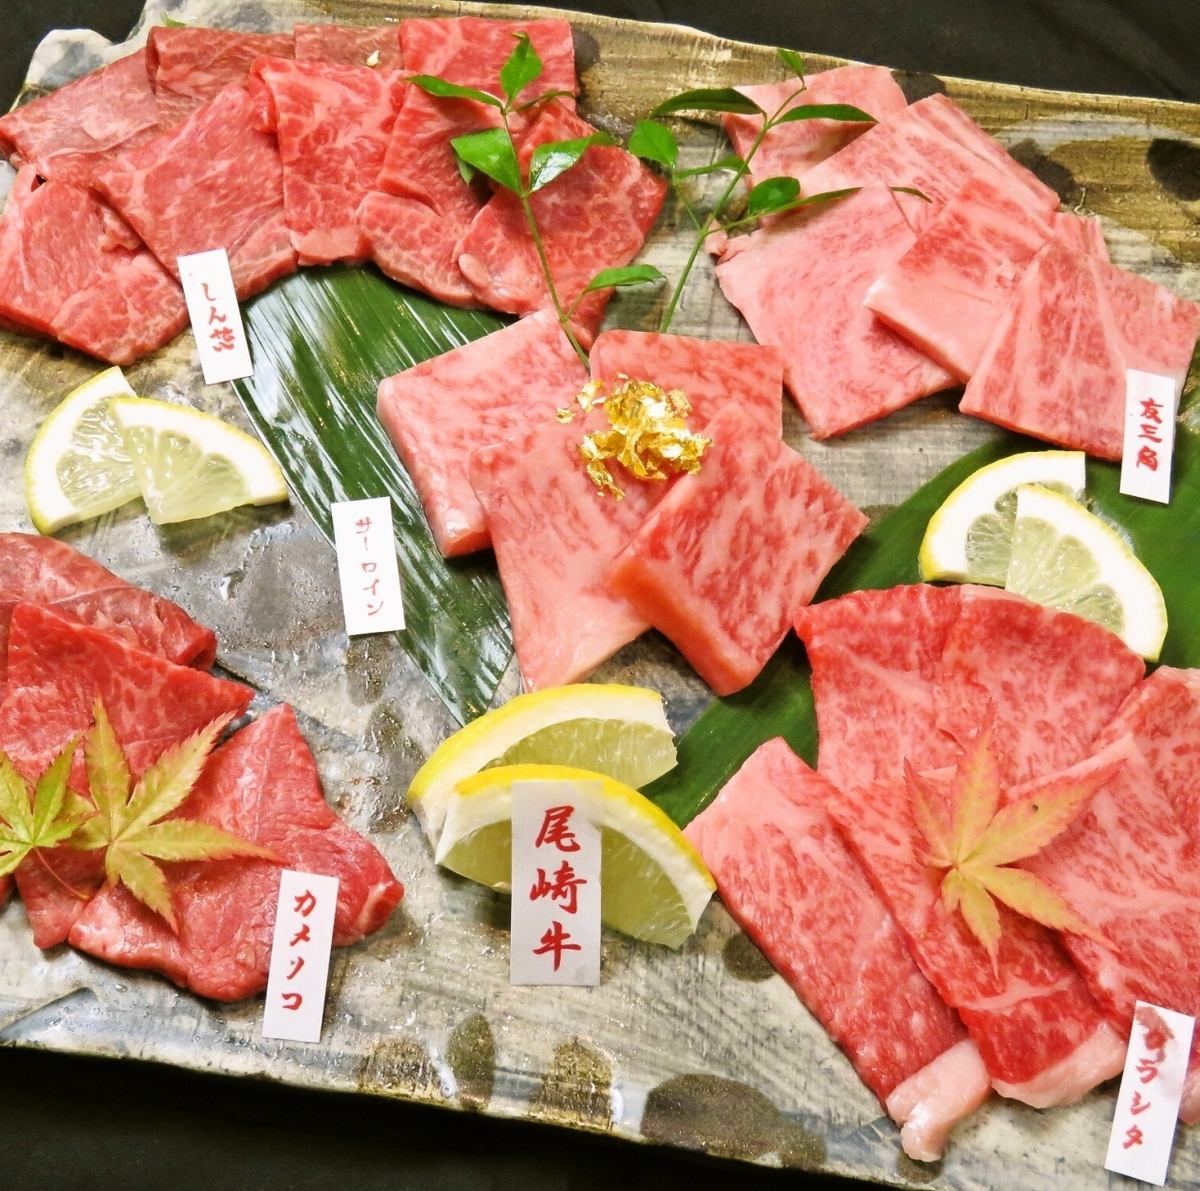 提供7,000日元起的套餐，可以品尝到整头购买的尾崎牛。